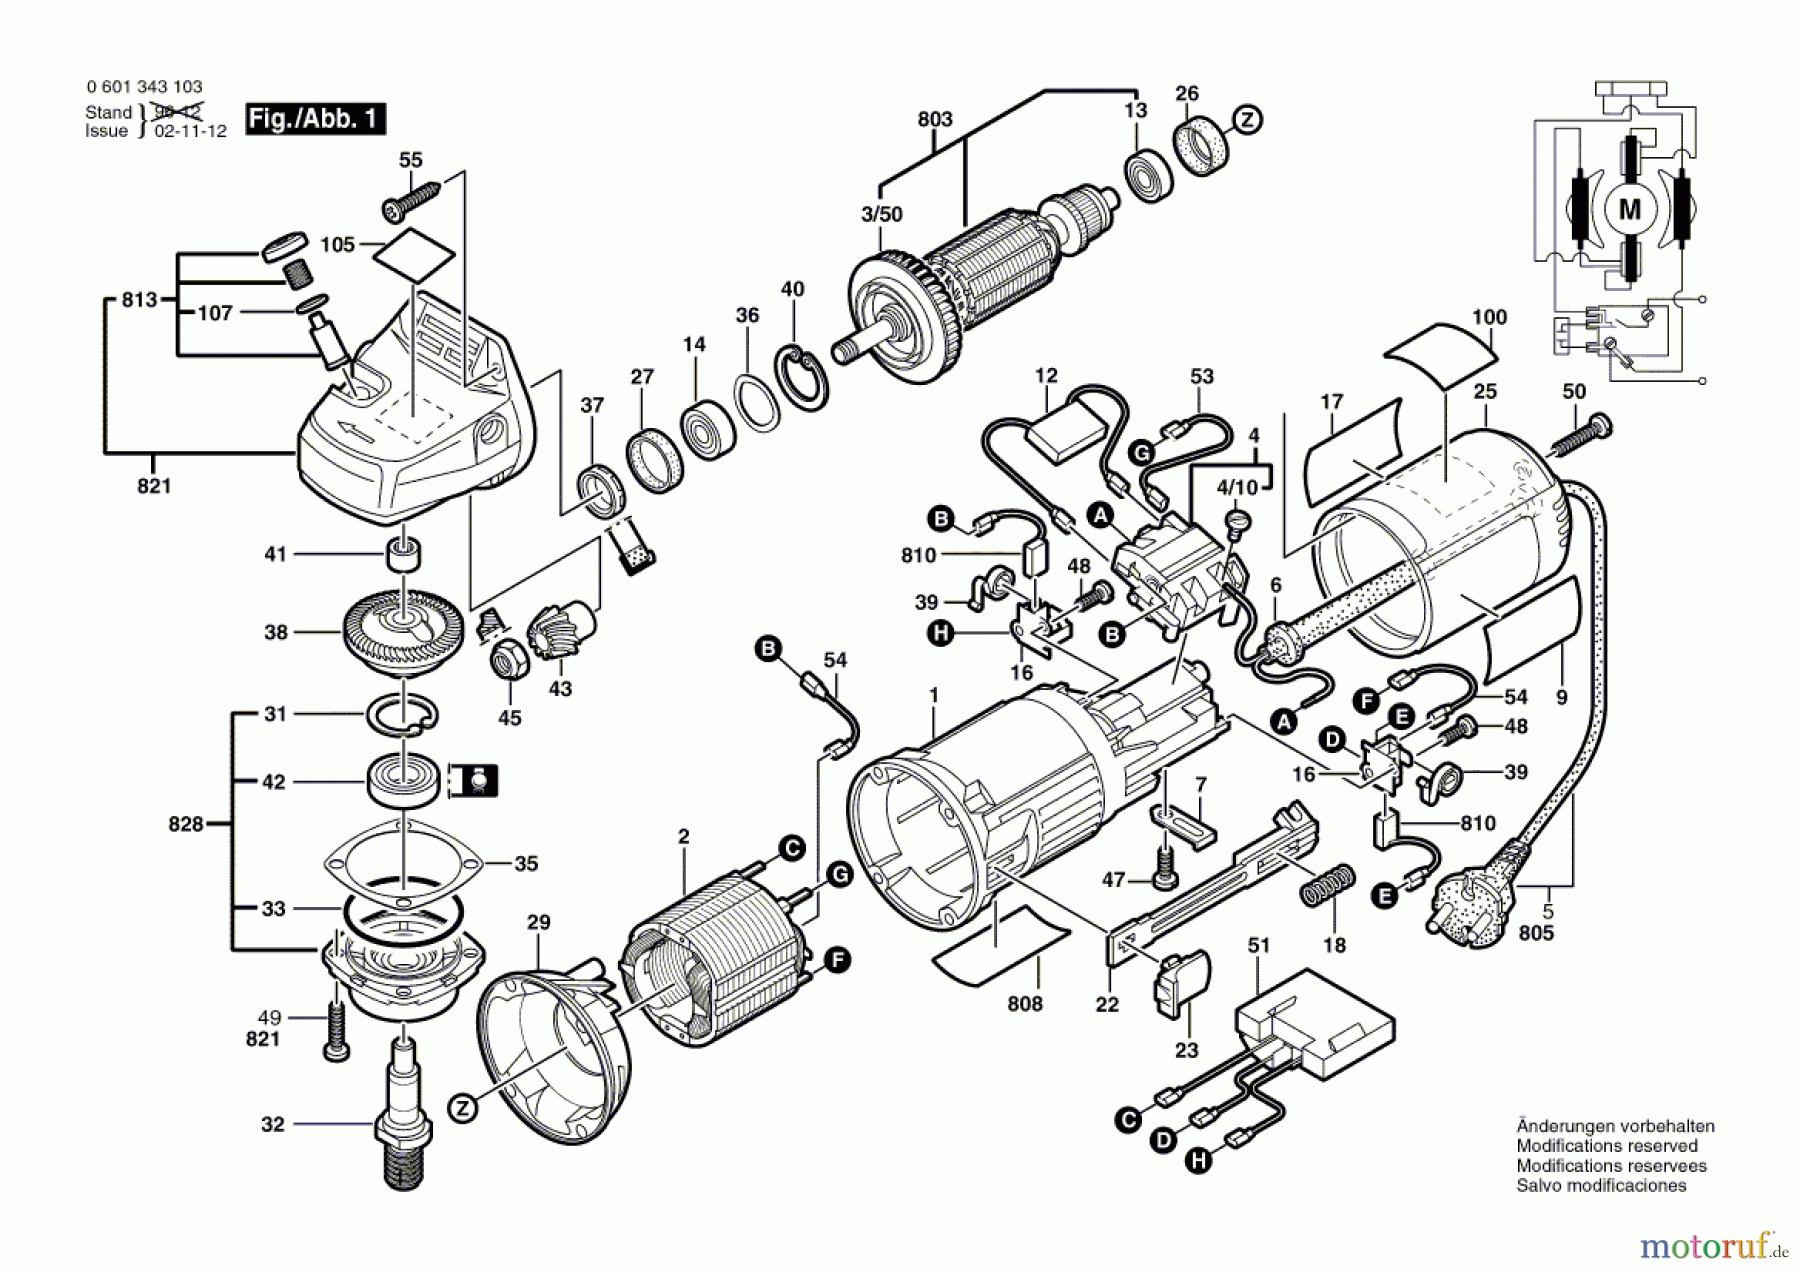  Bosch Werkzeug Winkelschleifer GWS 9-125 CM Seite 1